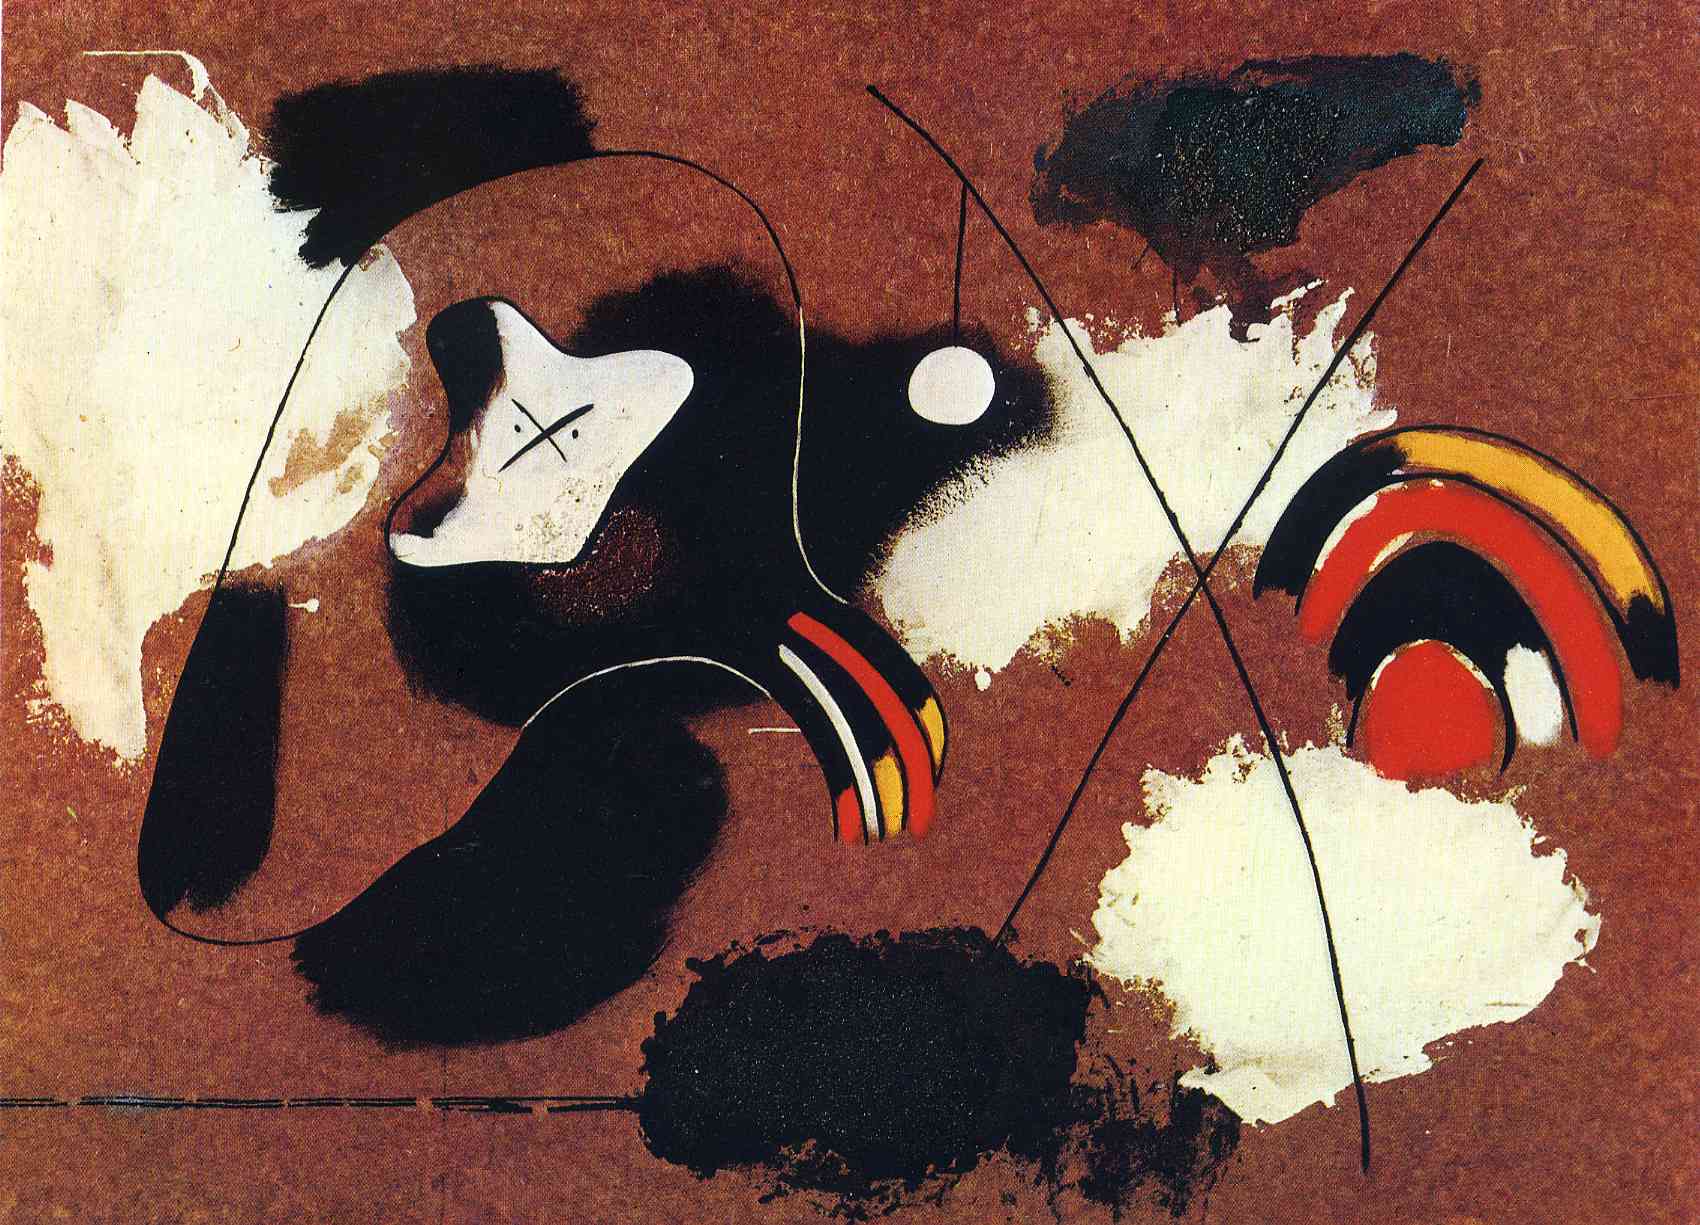 Painting by Joan Miró - 1936 - 78 x 108 cm Fundació Joan Miró